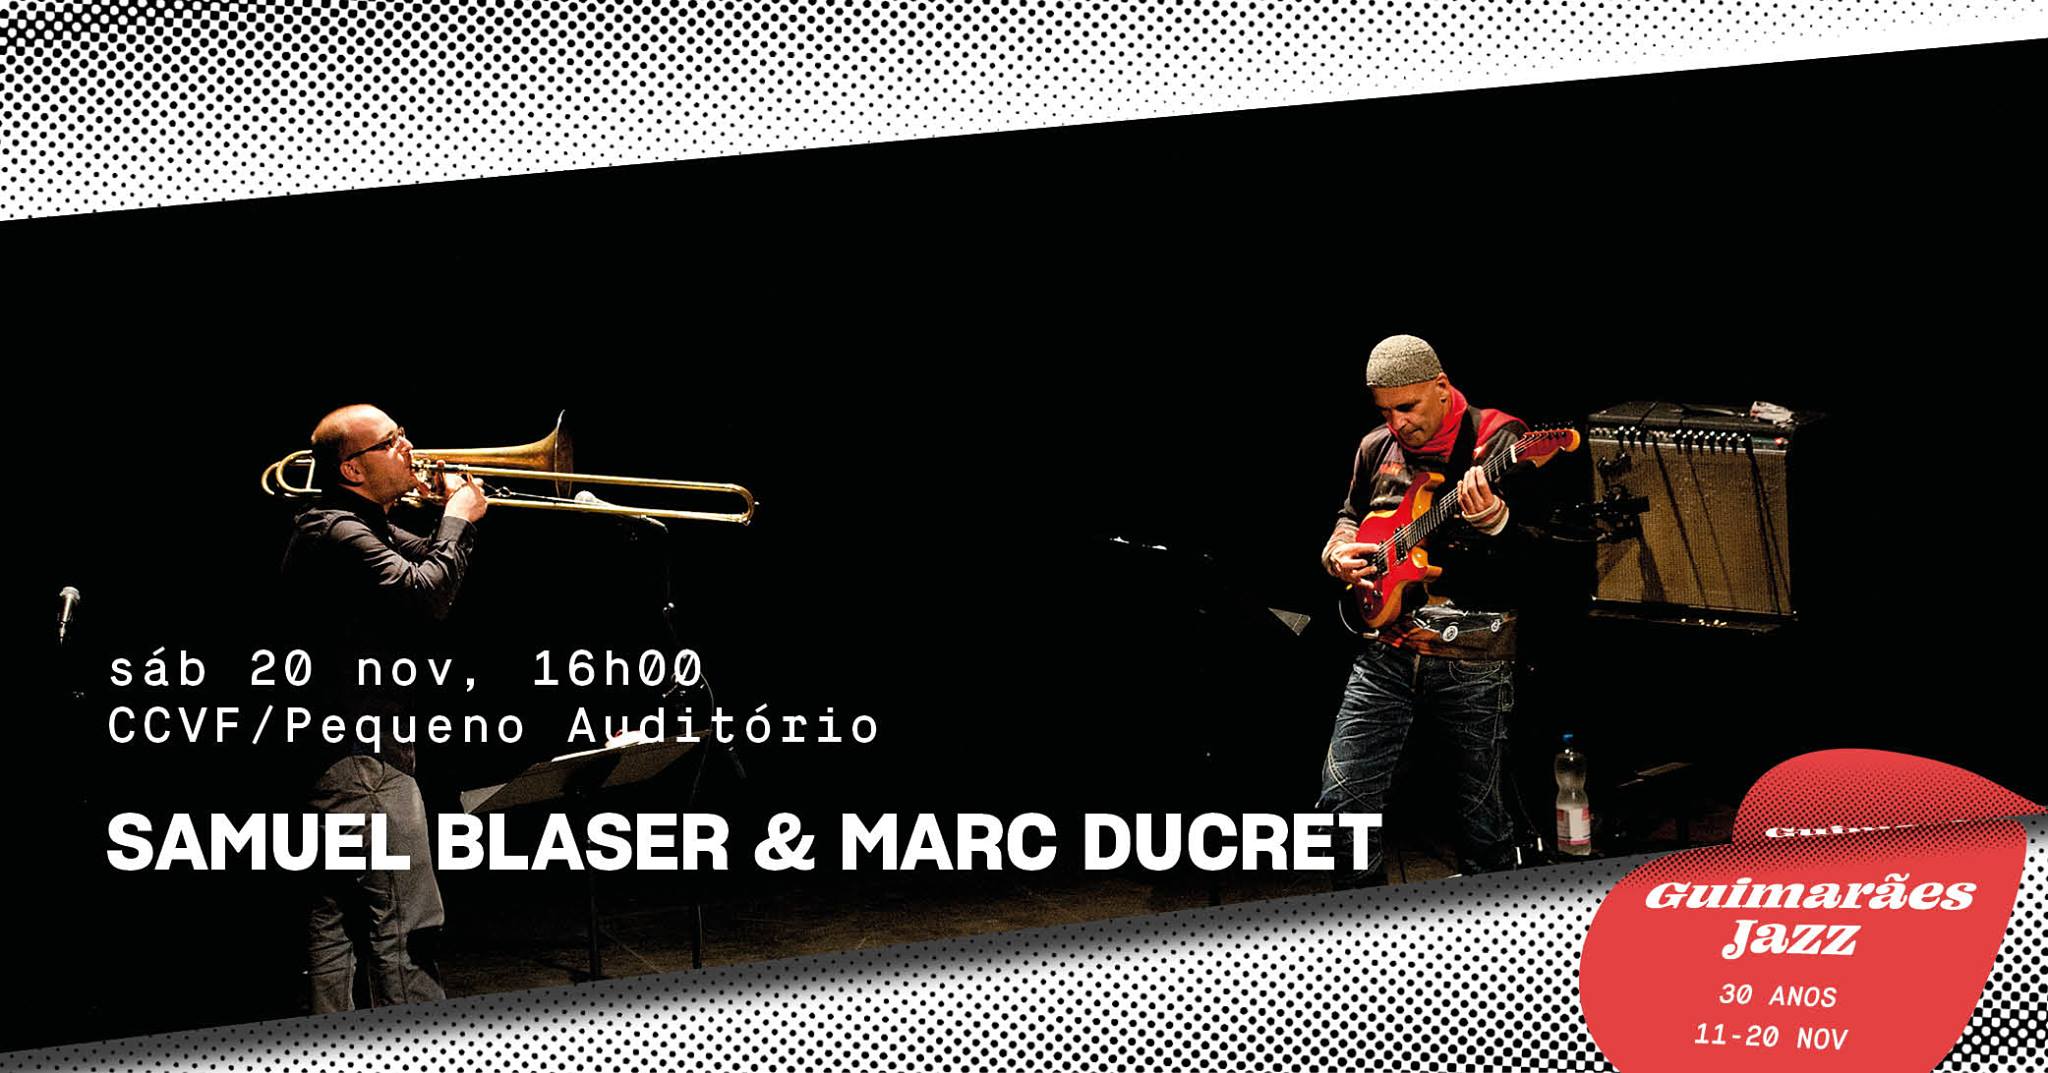 Guimarães Jazz 2021 ● Samuel Blaser & Marc Ducret